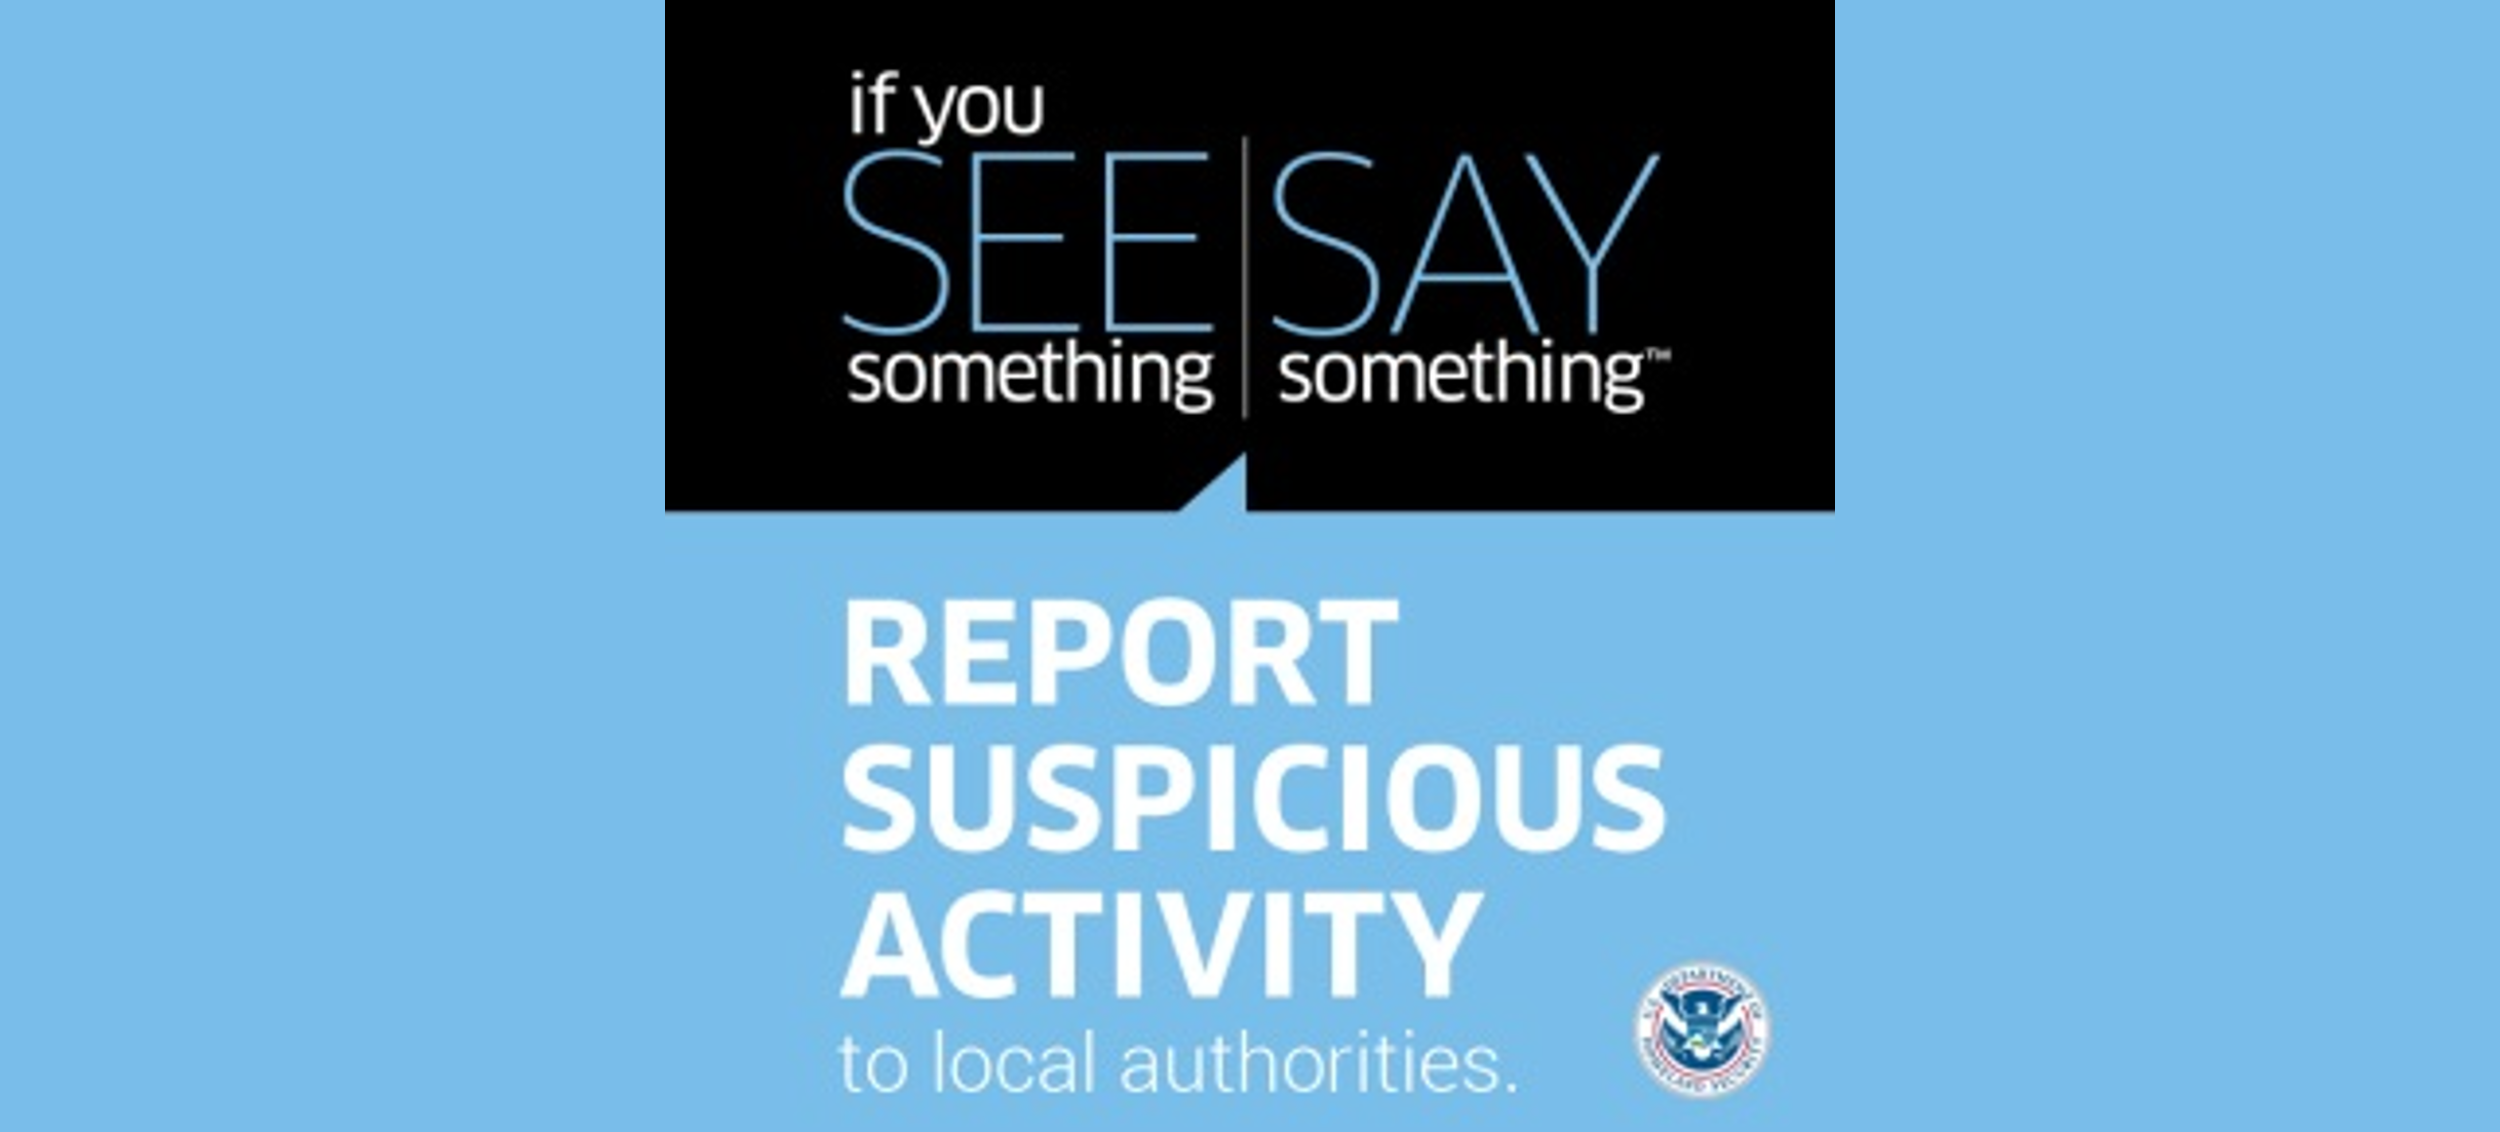 Report suspicious activity